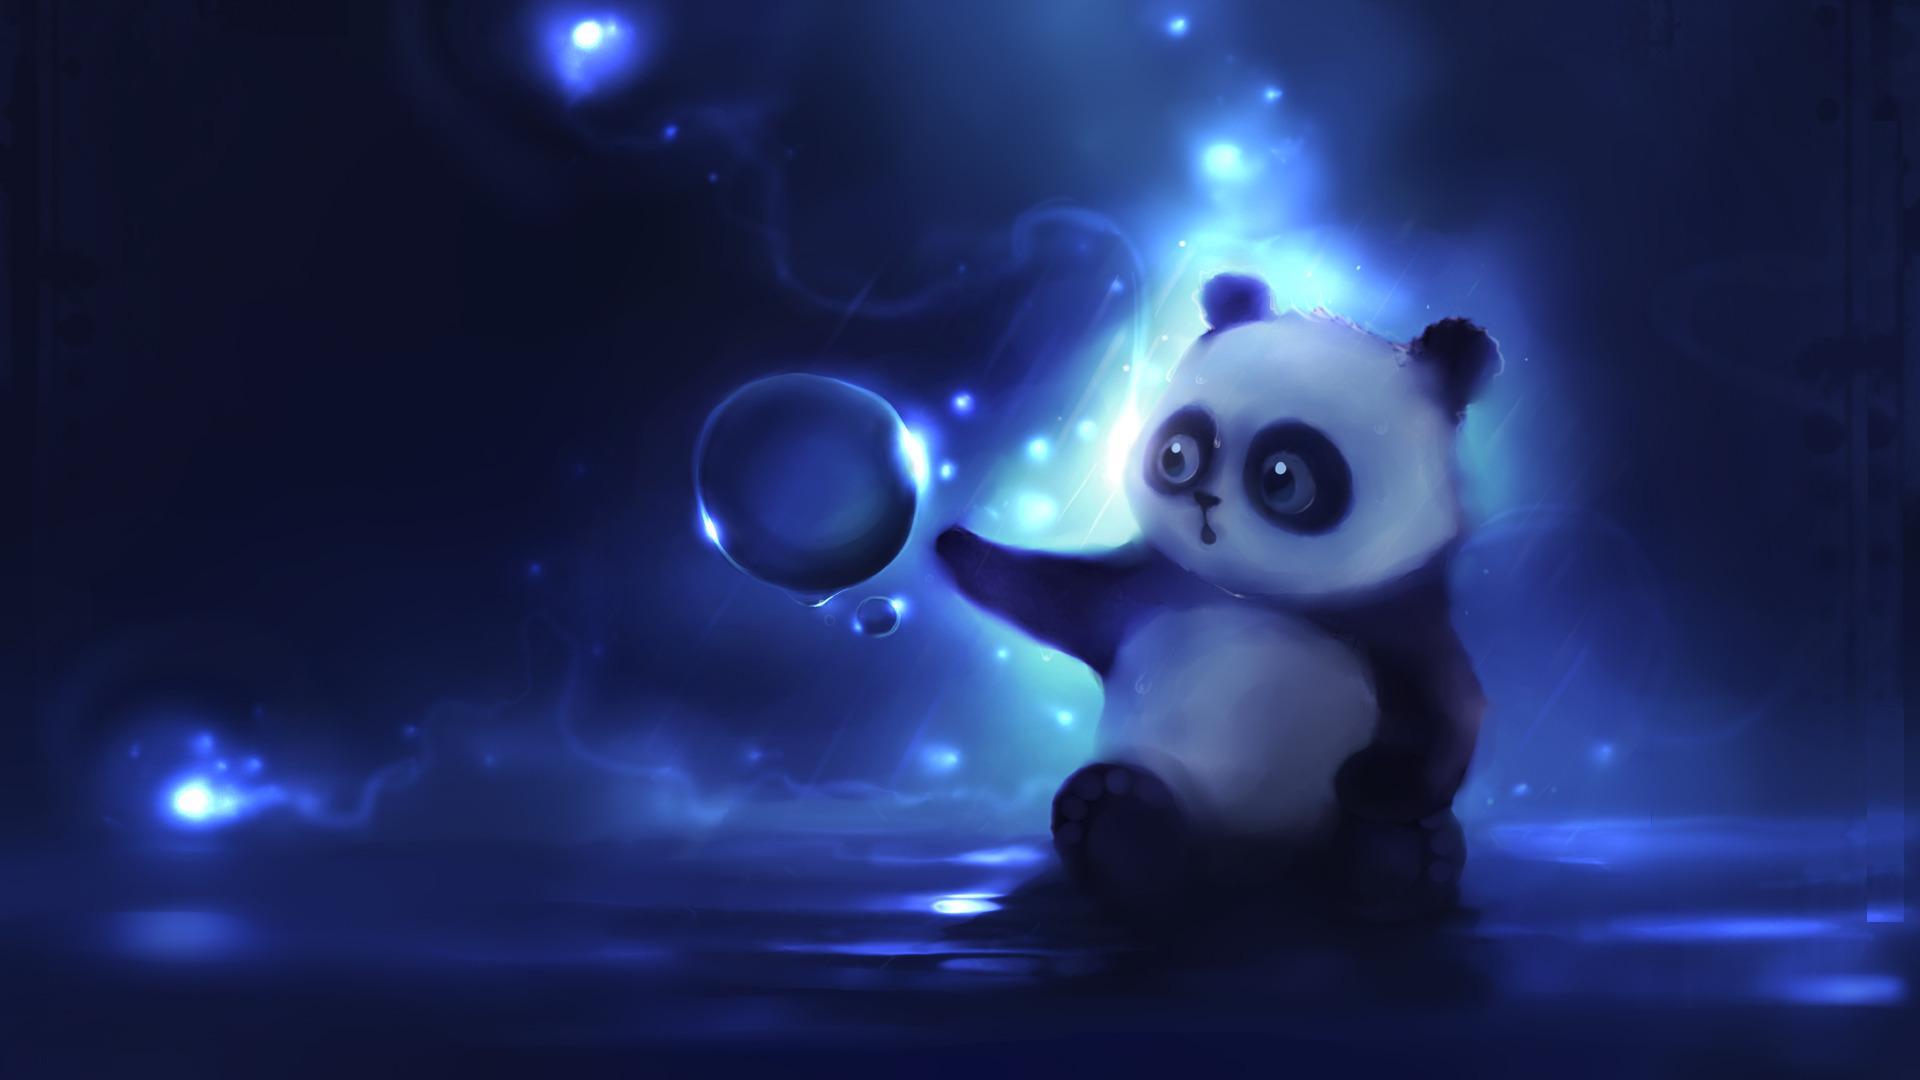 Animated Moving Wallpaper For Desktop Cute Panda